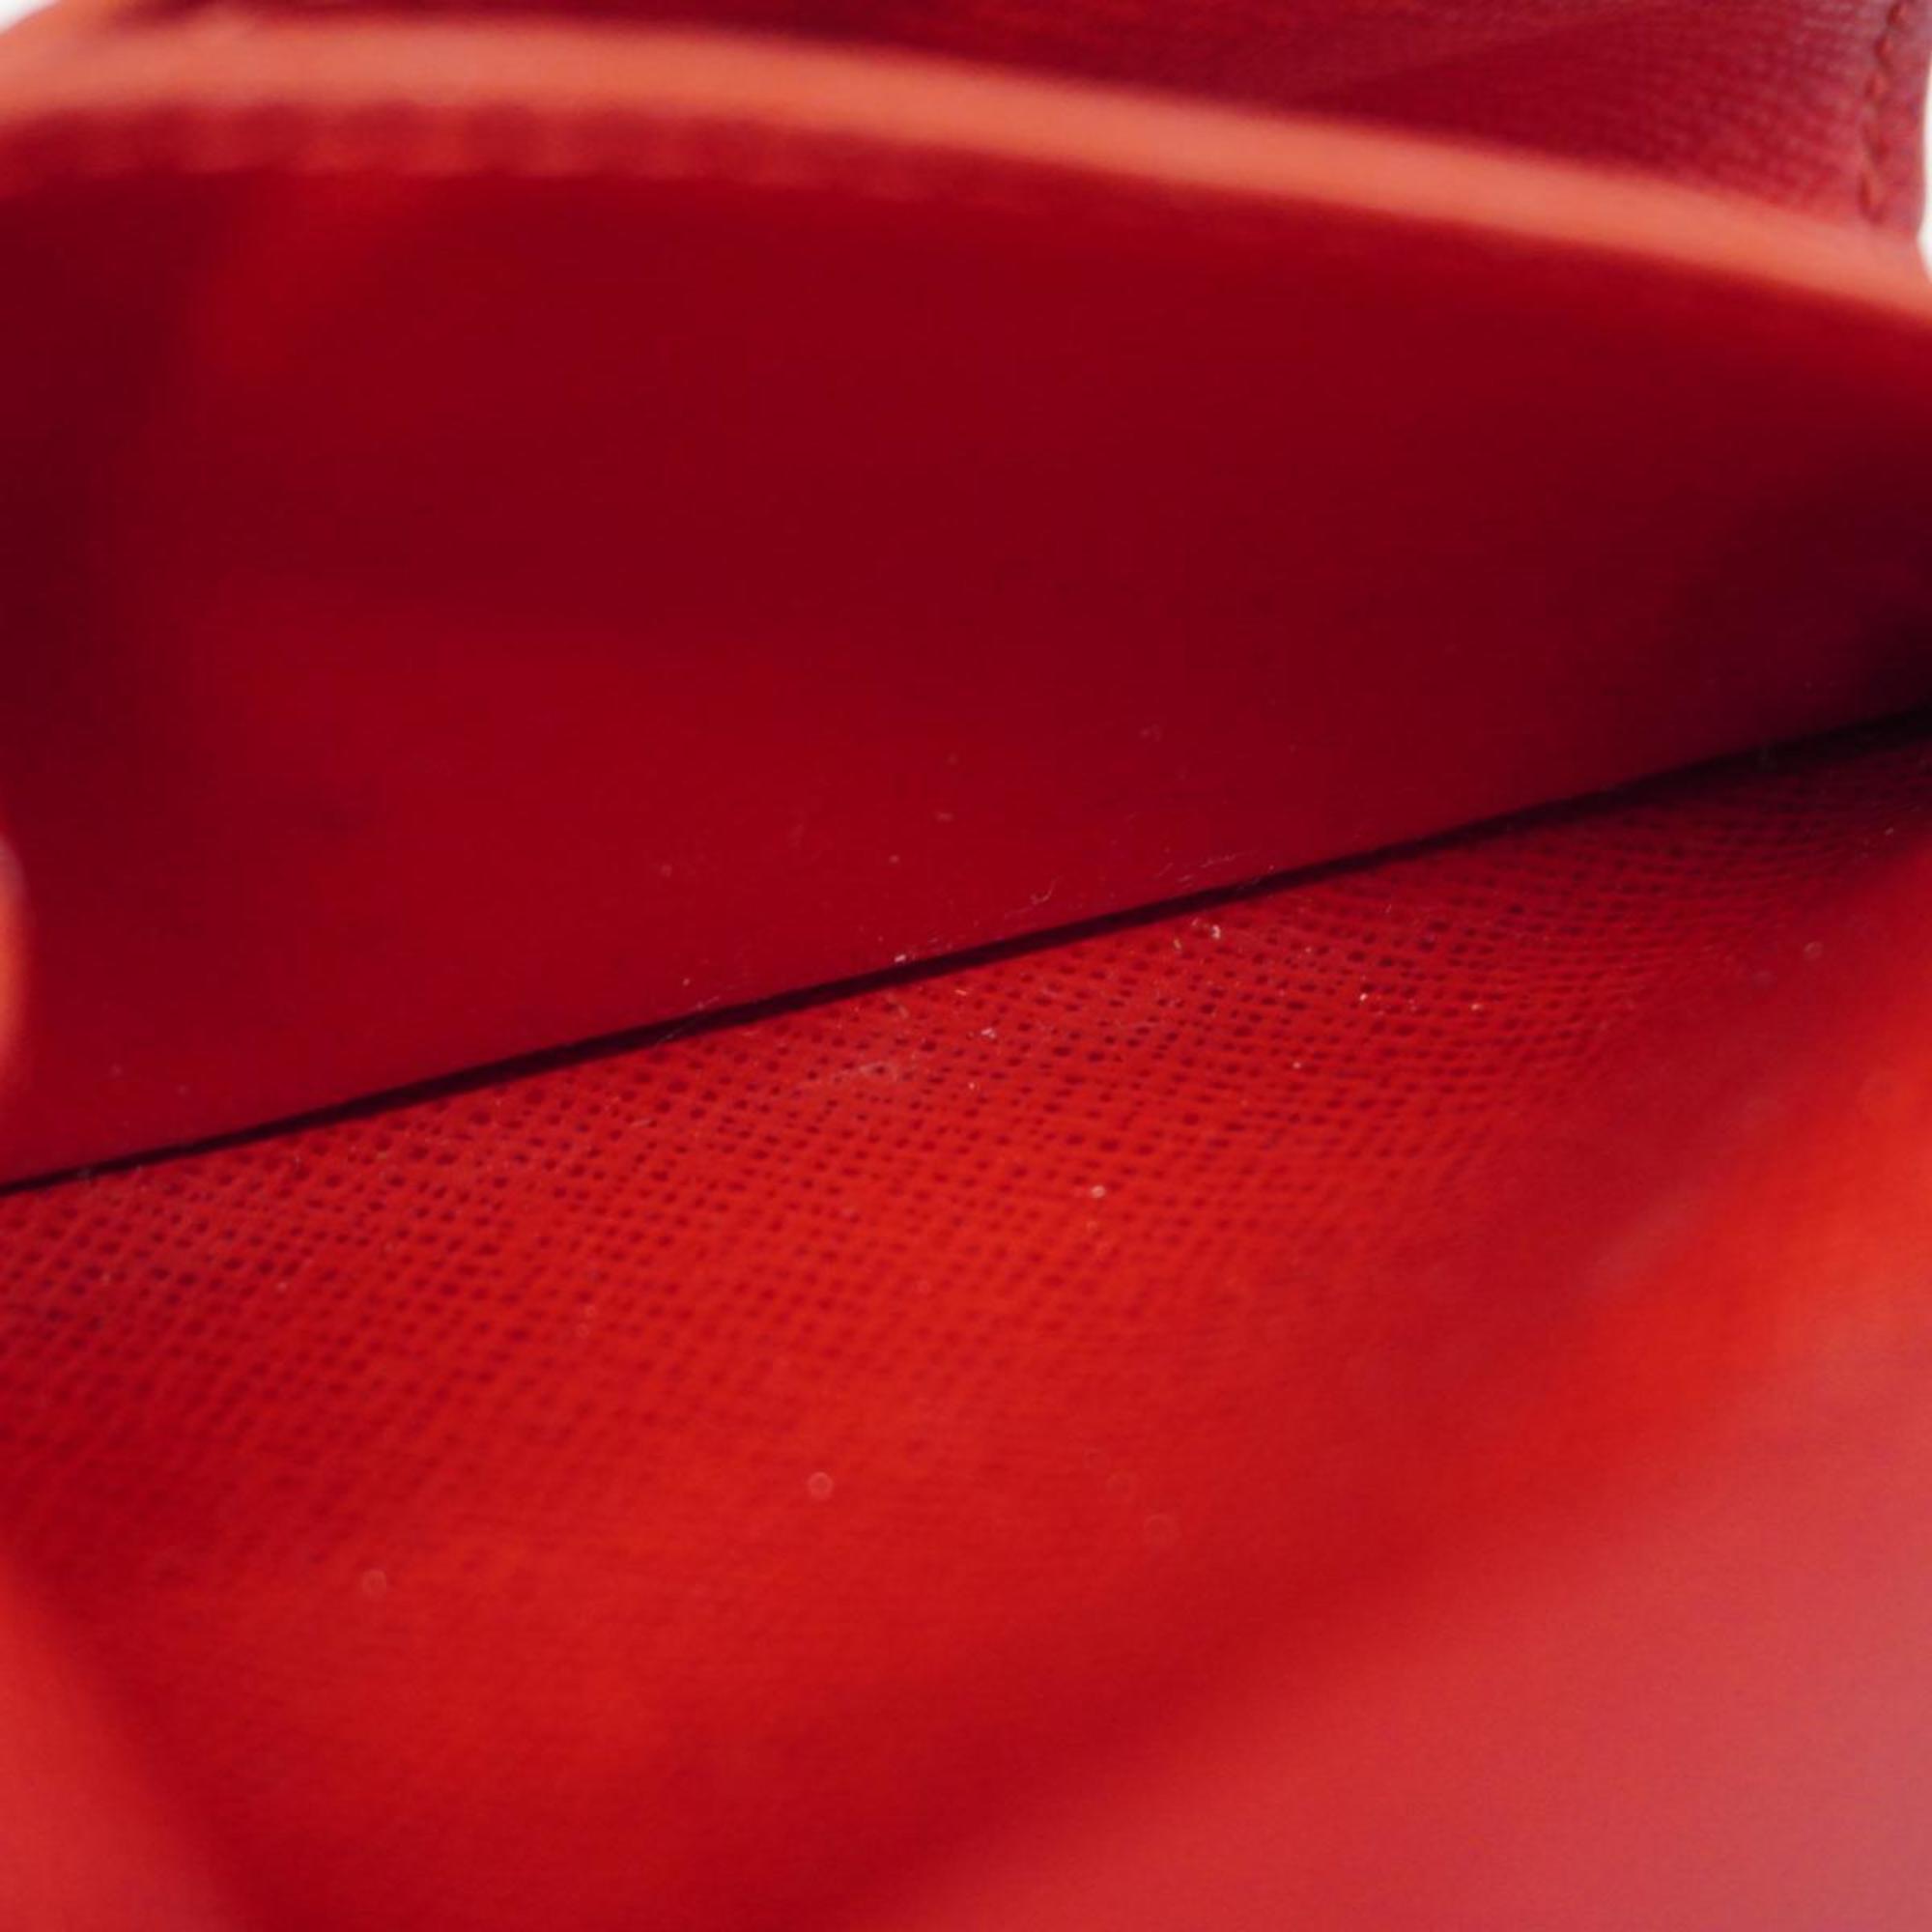 ルイ・ヴィトン(Louis Vuitton) ルイ・ヴィトン 三つ折り財布 ダミエ ポルトフォイユヴィクトリーヌ N61013 エベヌレディース